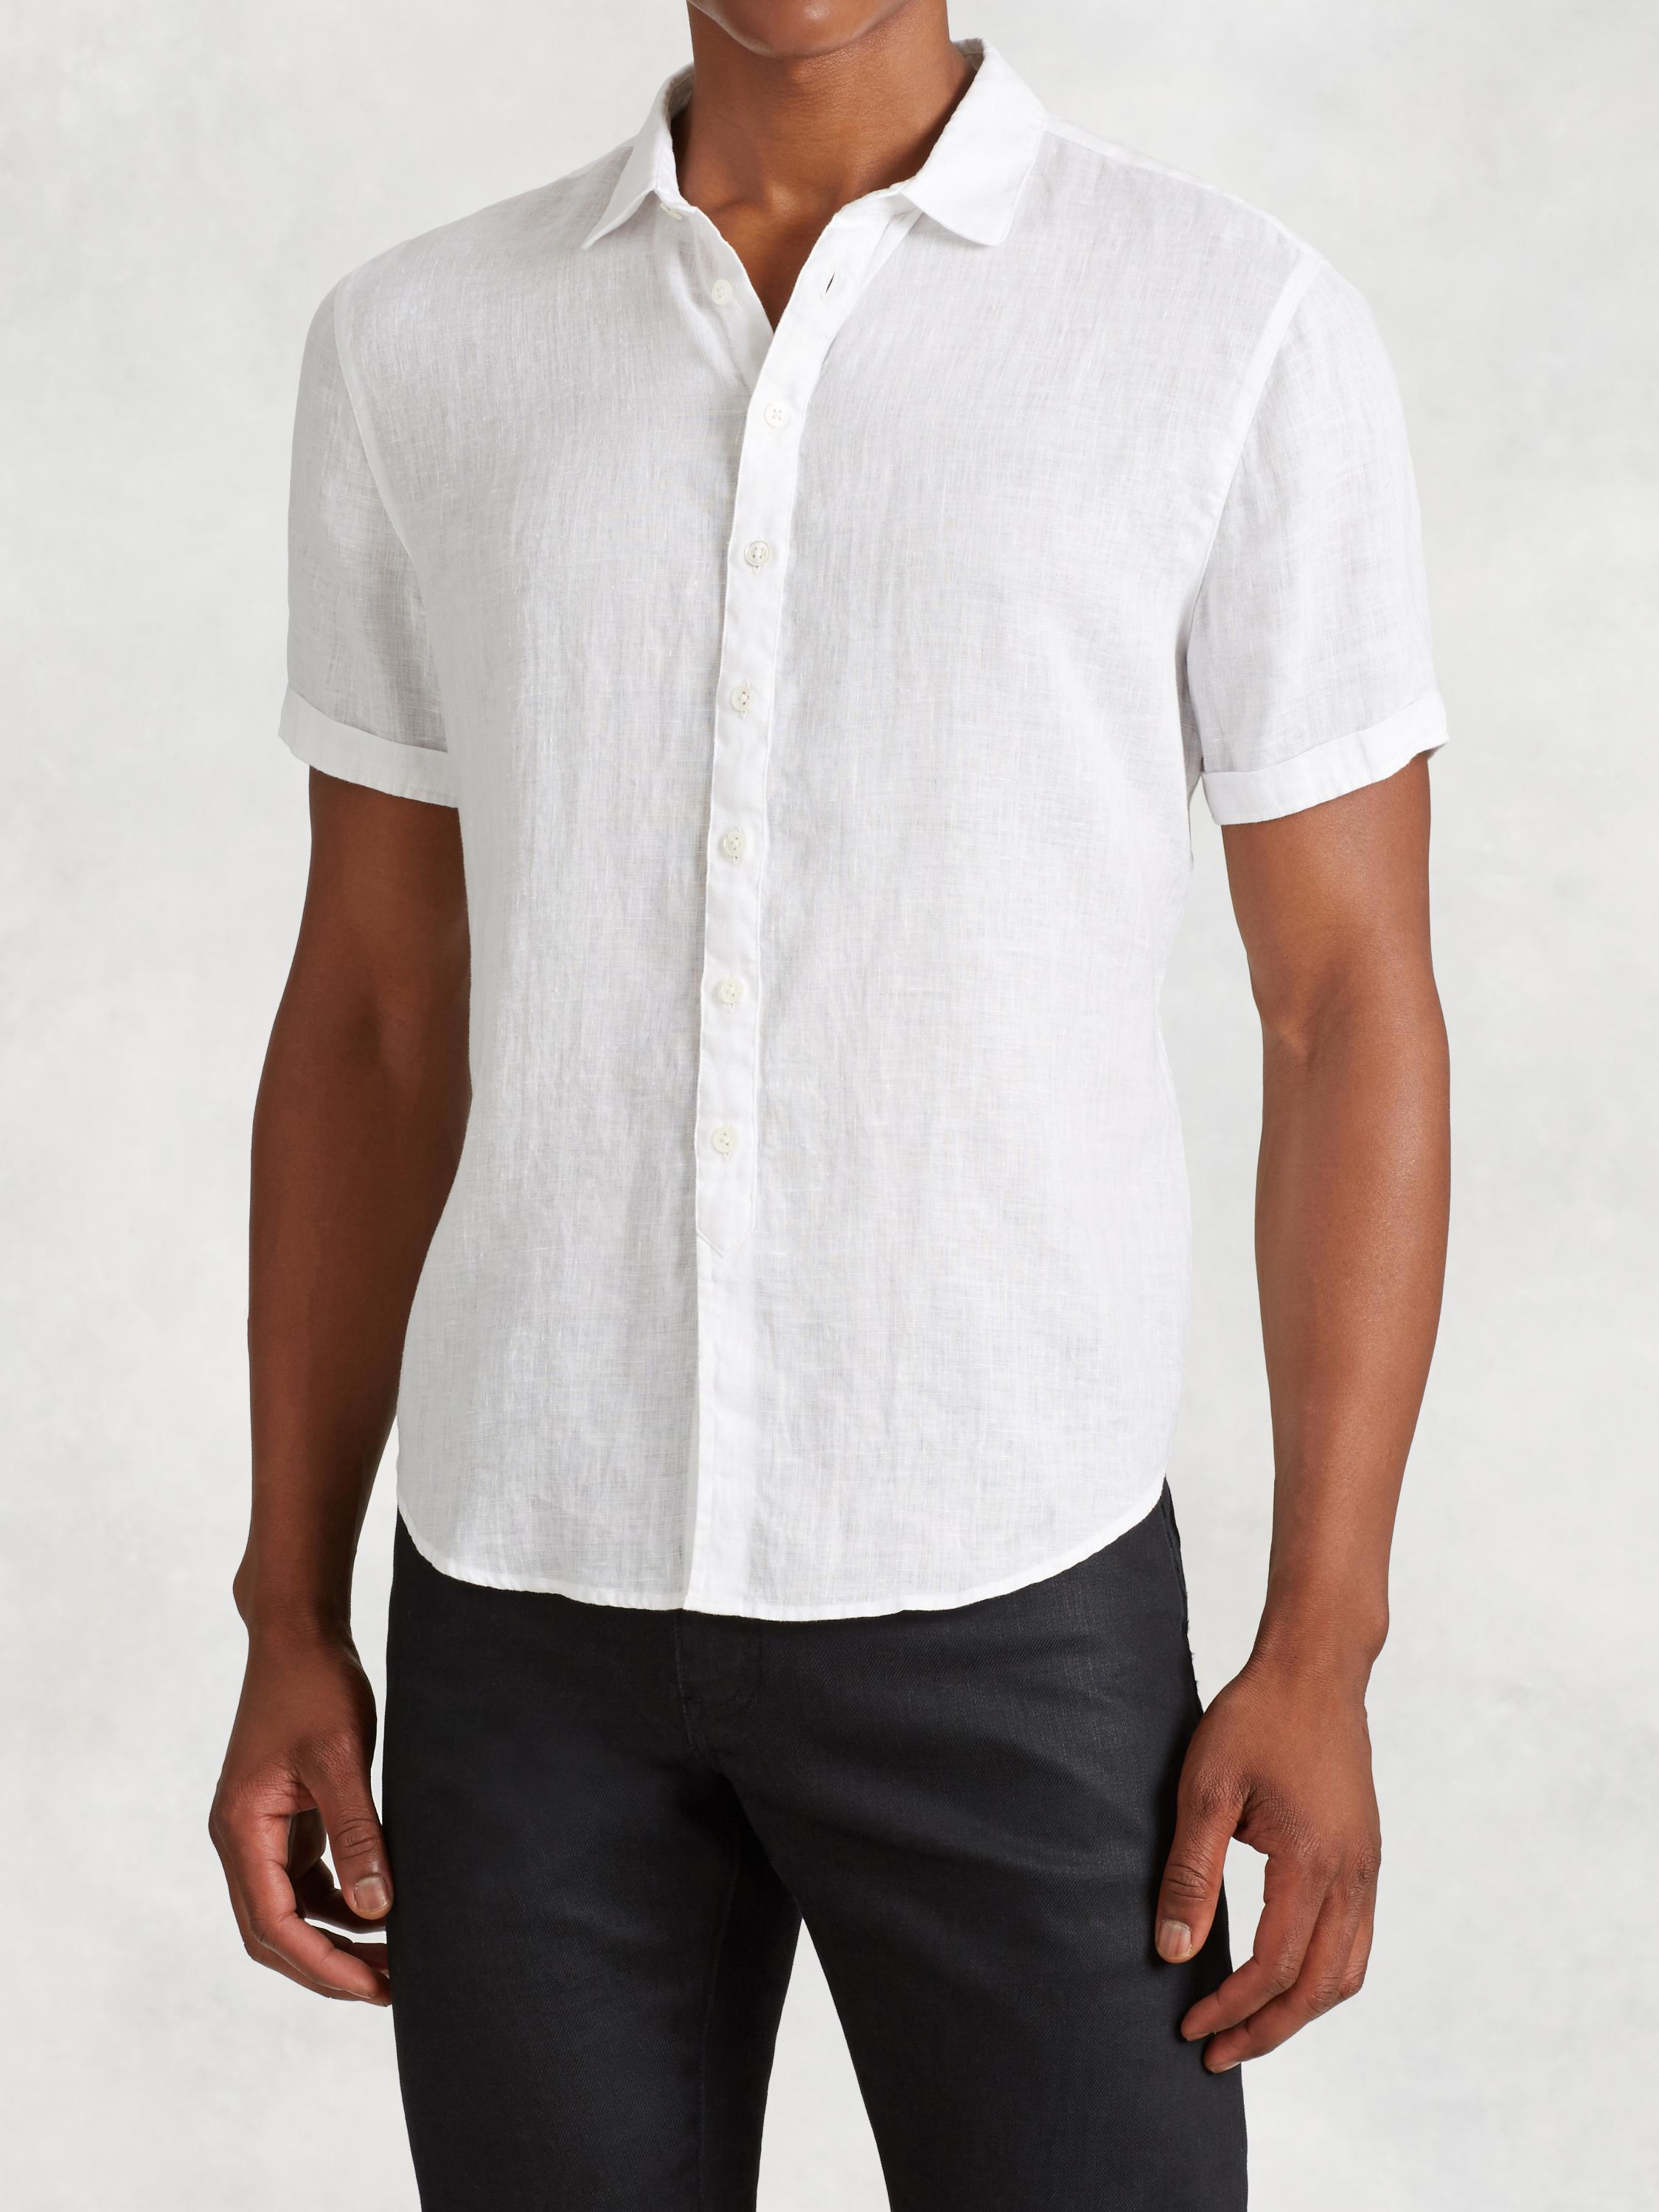 Lyst - John Varvatos Linen Short Sleeve Shirt in White for Men